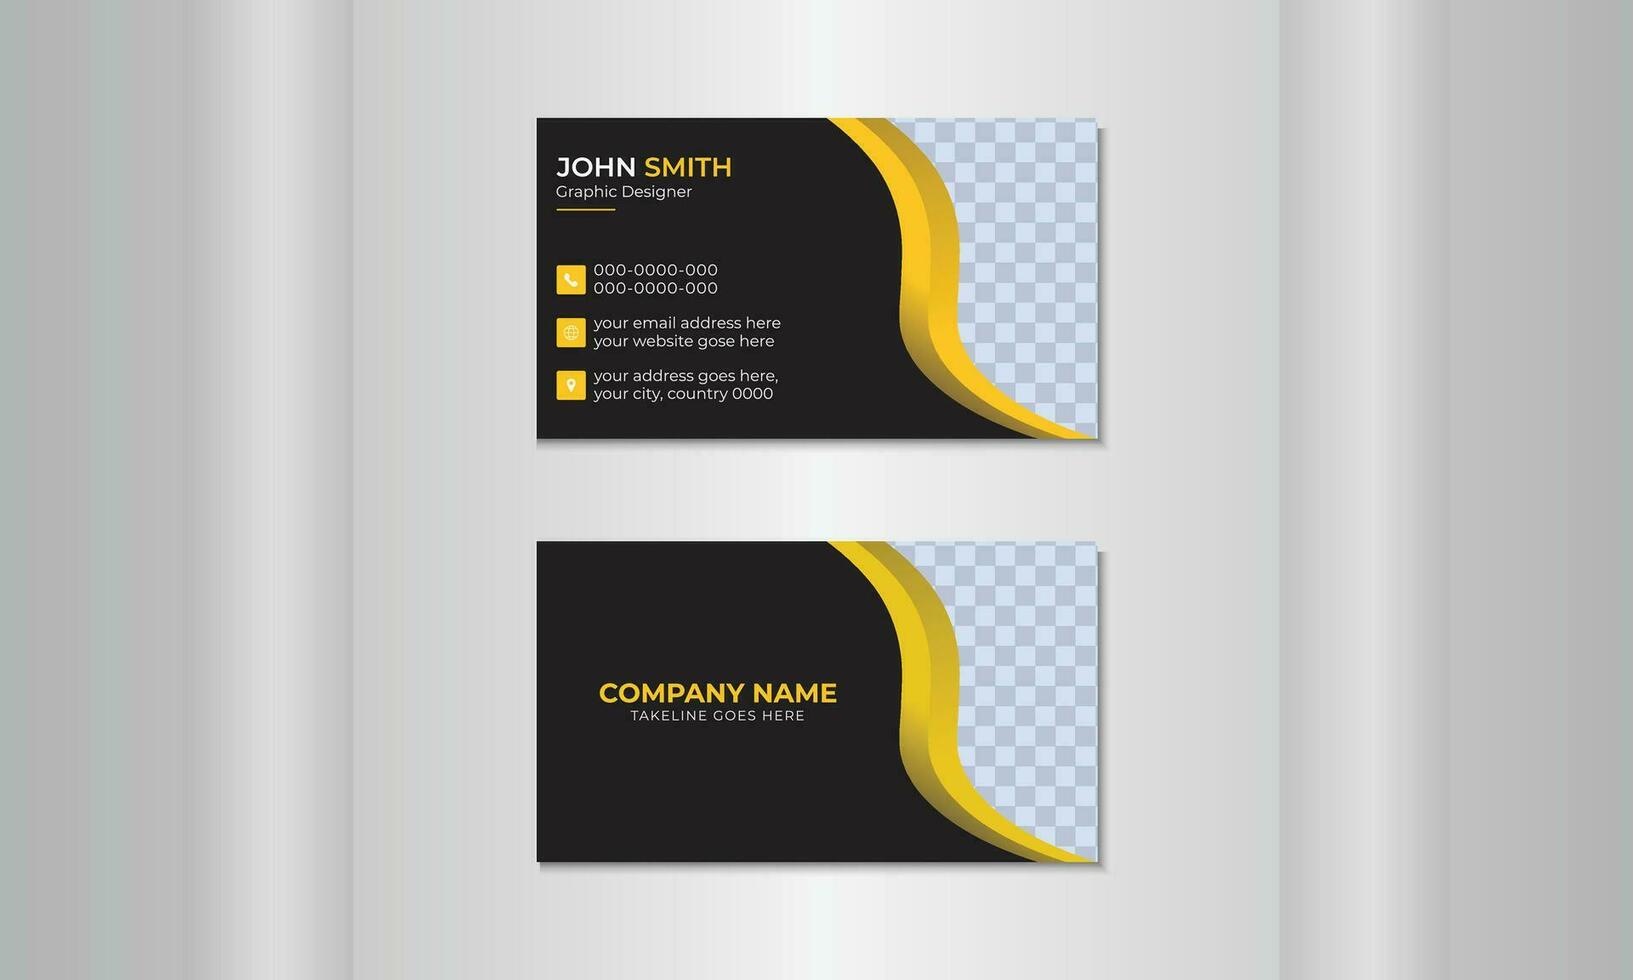 un moderno negocio tarjeta con dos lados modelo para un creativo y ordenado negocio tarjeta. limpiar vector ilustración de un negocio tarjeta.